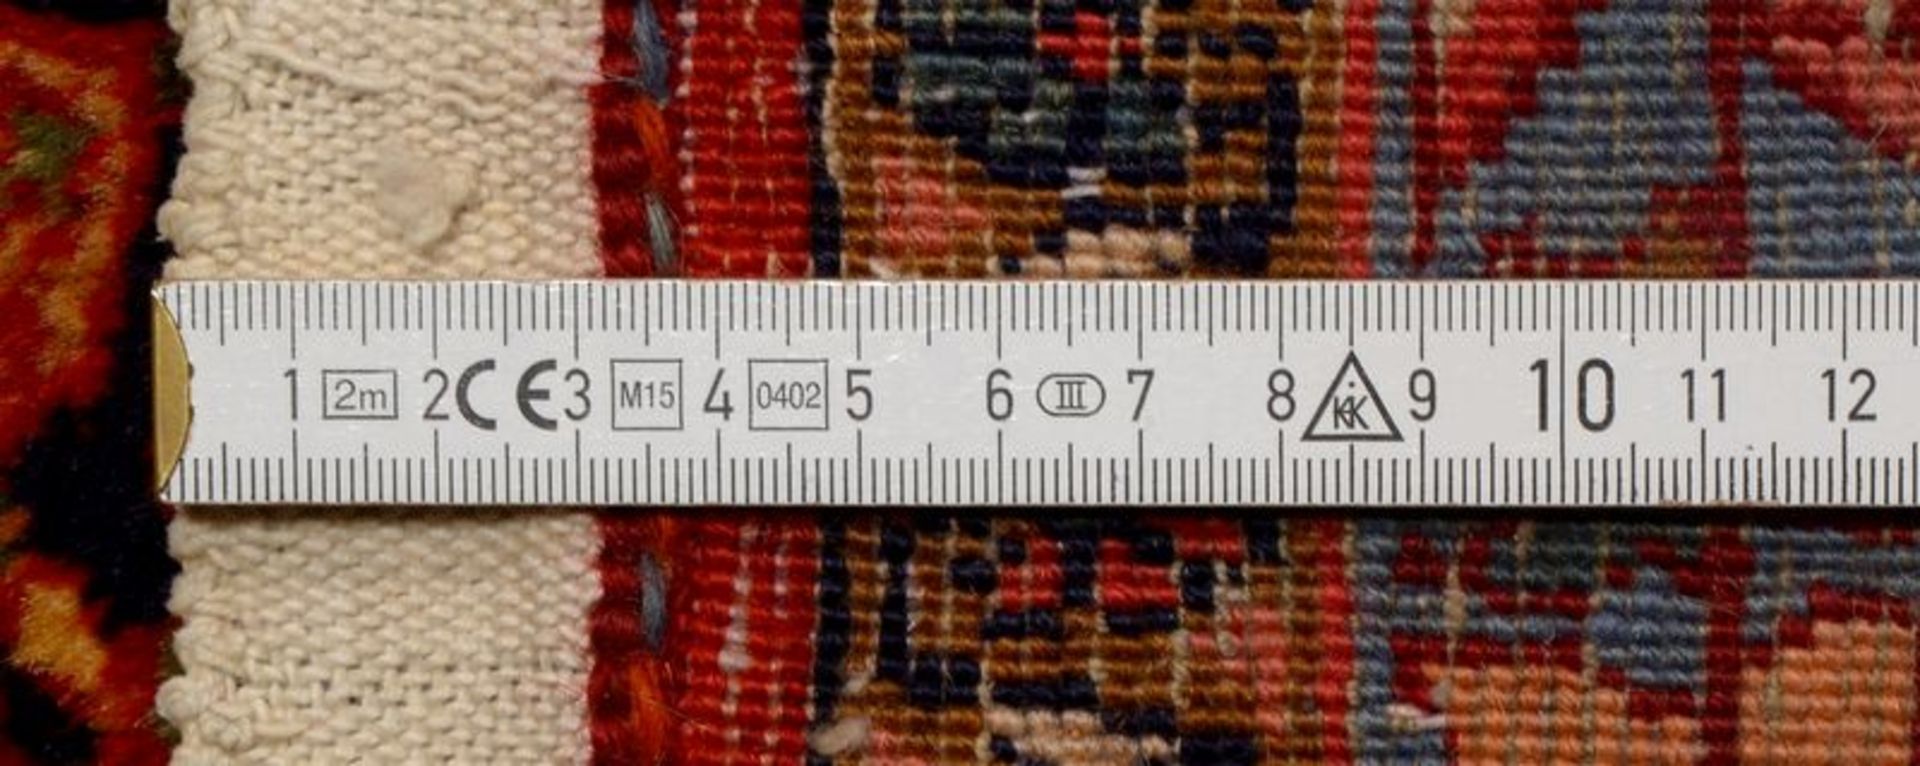 Bidjar, Herati-Muster, mit Rosenmedaillon, hochflorig, in gutem Zustand, wohnfertig (gechlort gewasc - Bild 2 aus 2